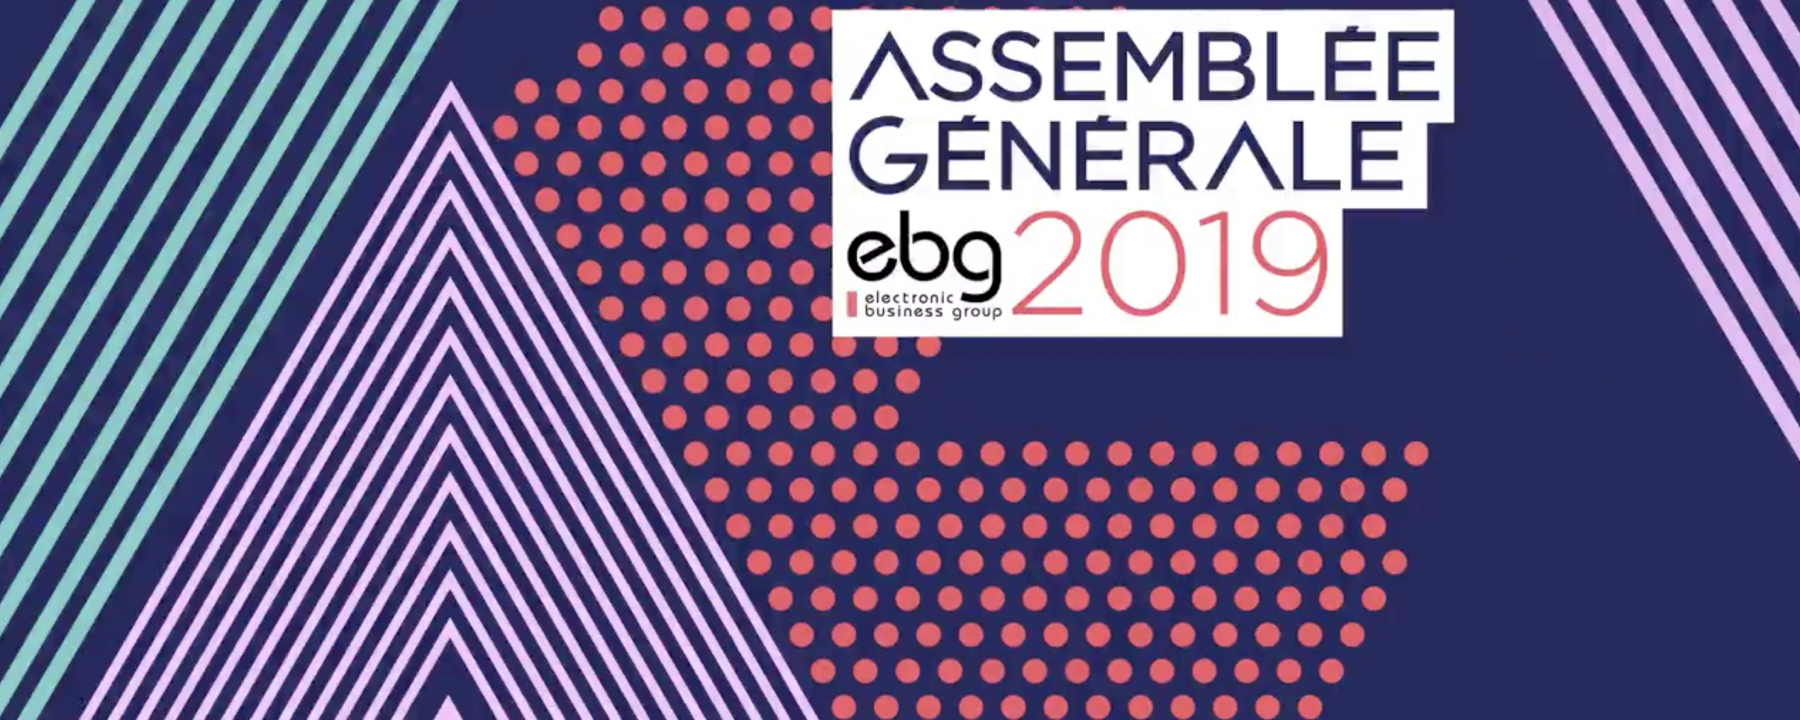 Assemblée générale EBG 2019